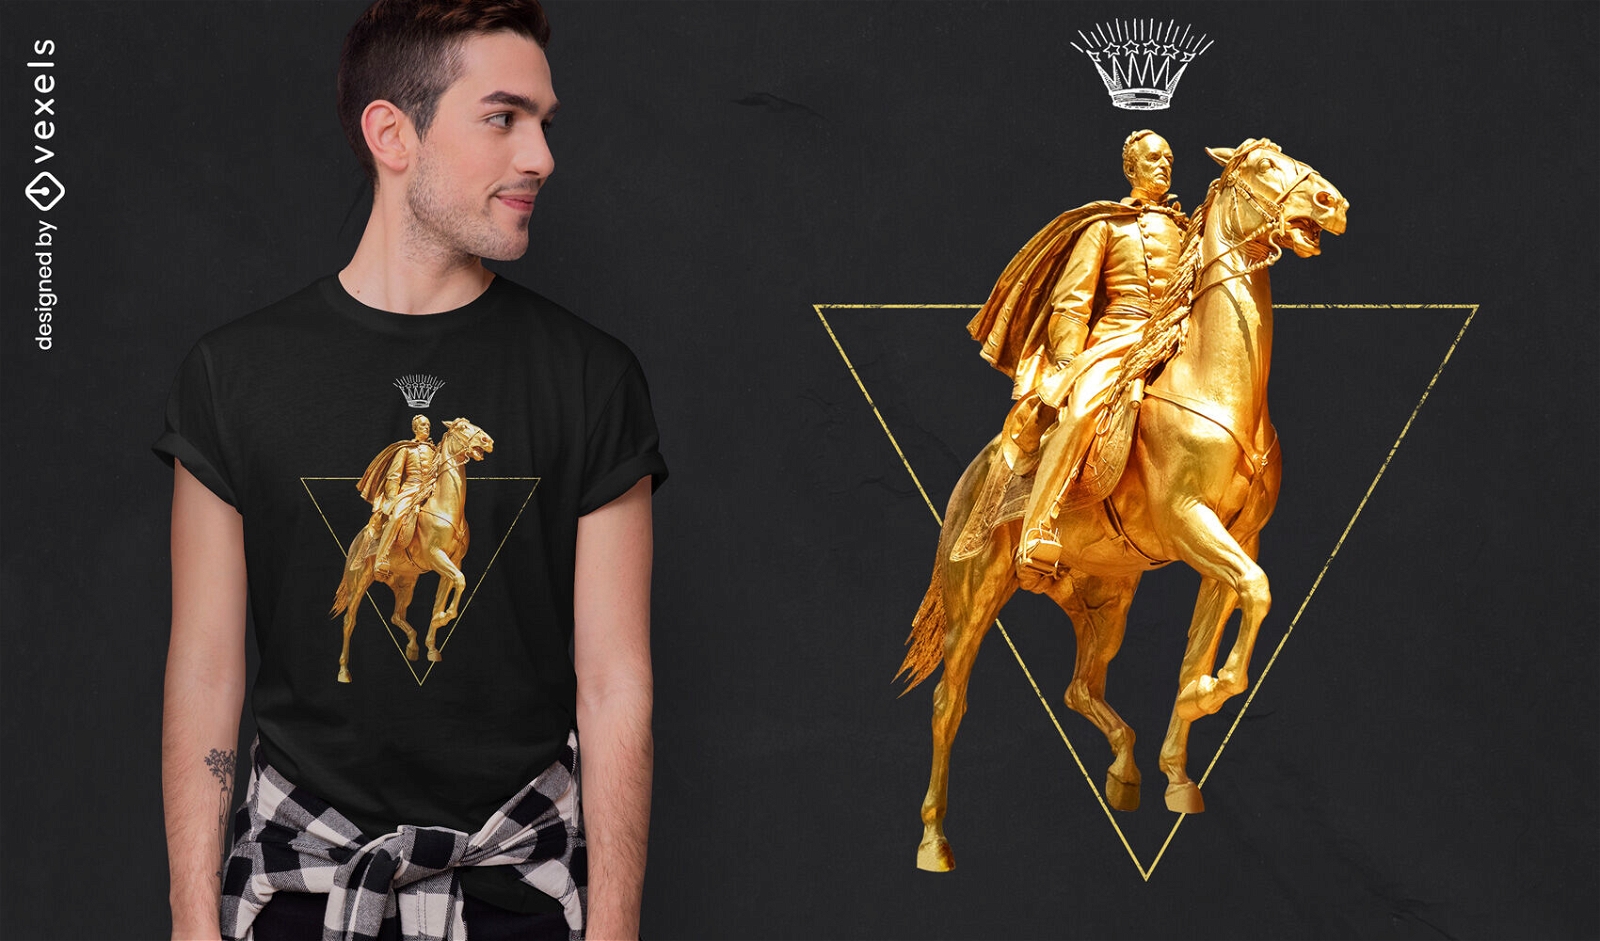 Dise?o de camiseta psd golden horse and man